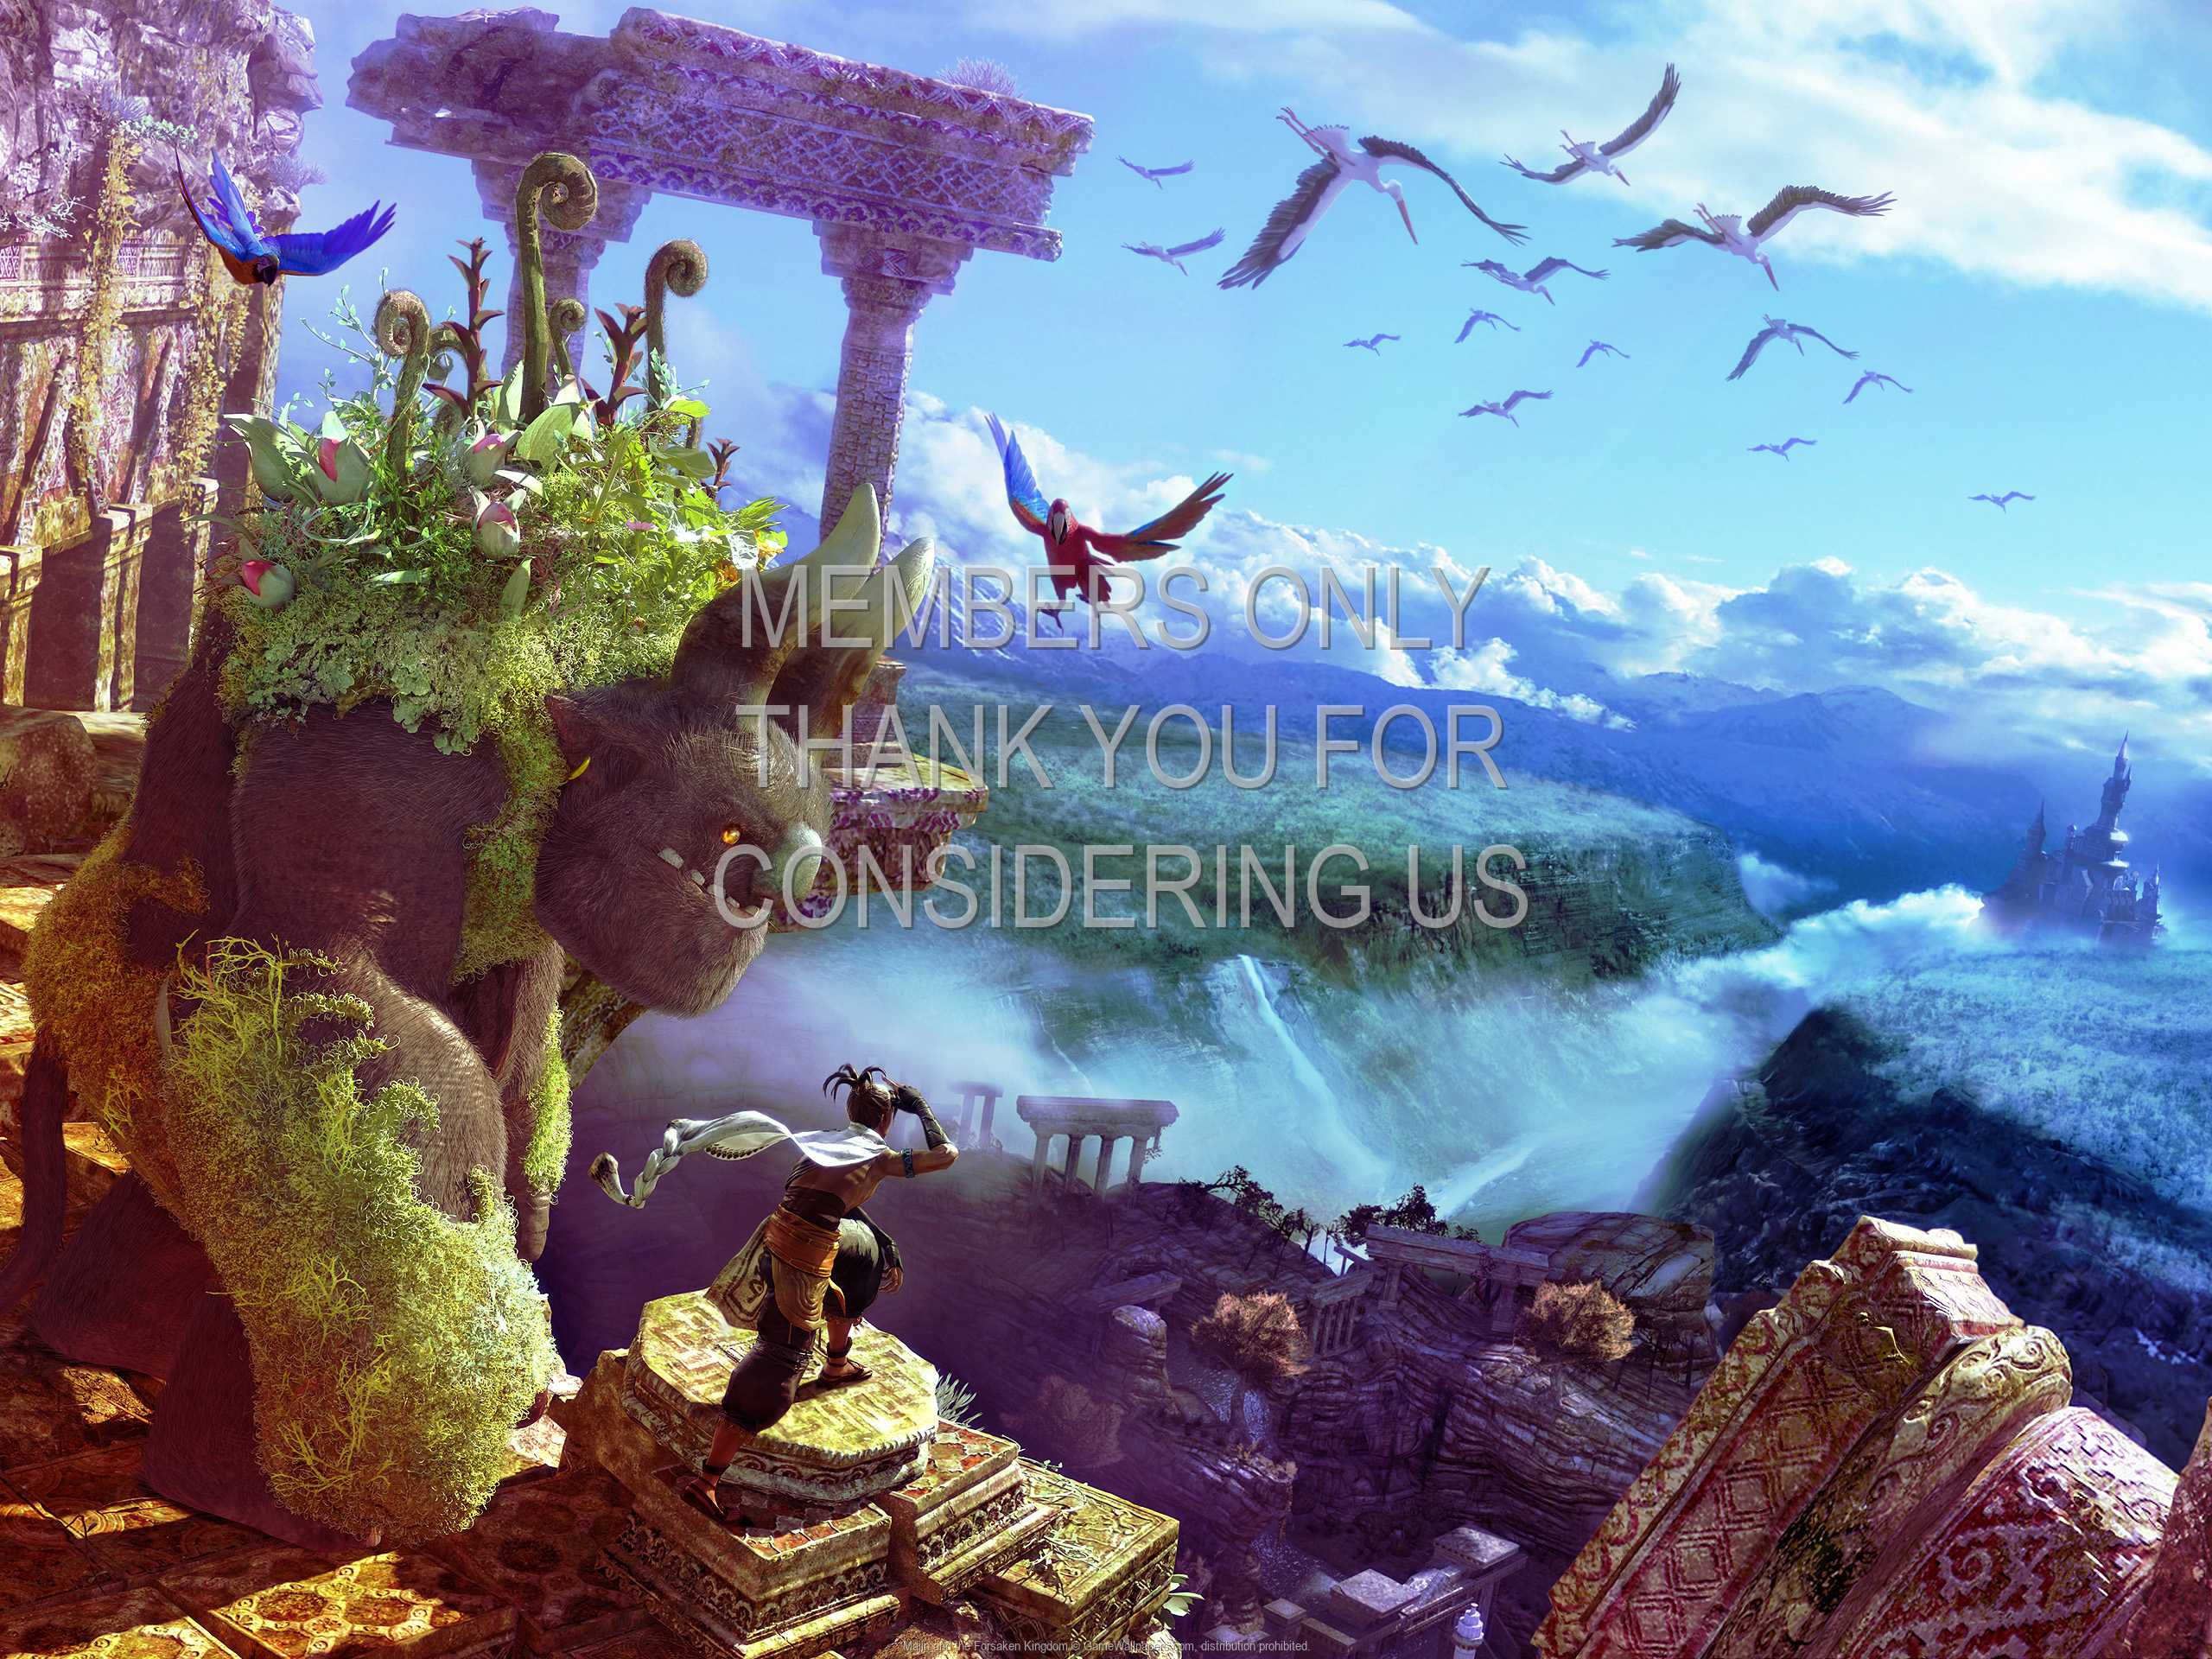 Majin and the Forsaken Kingdom 1080p%20Horizontal Mobile wallpaper or background 03